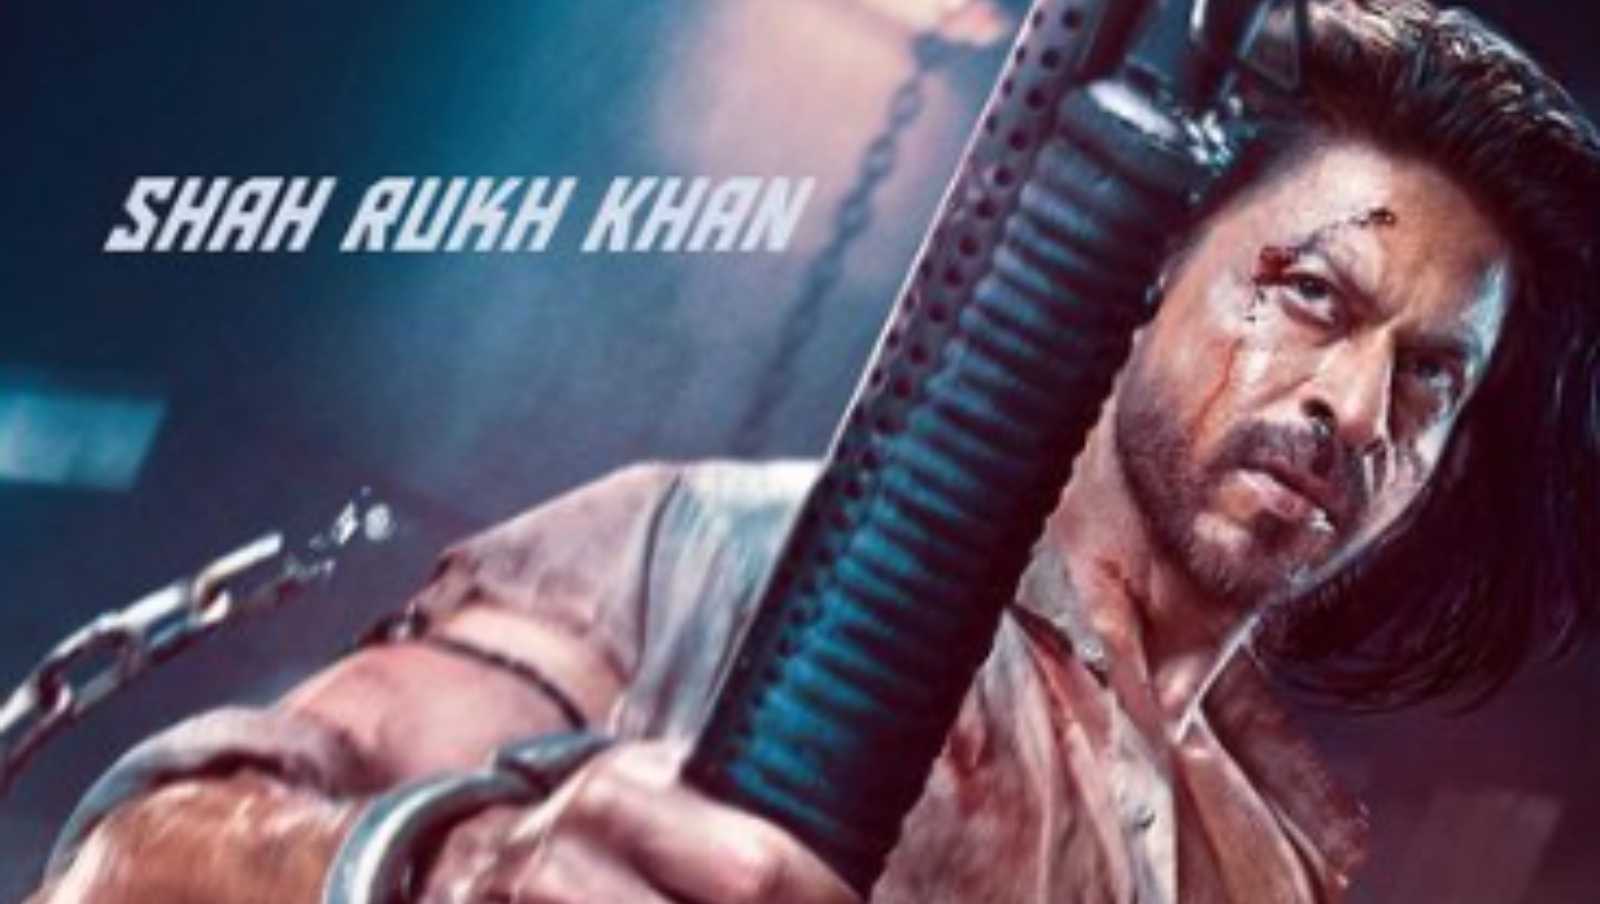 फिल्म पठान में शाहरुख खान
